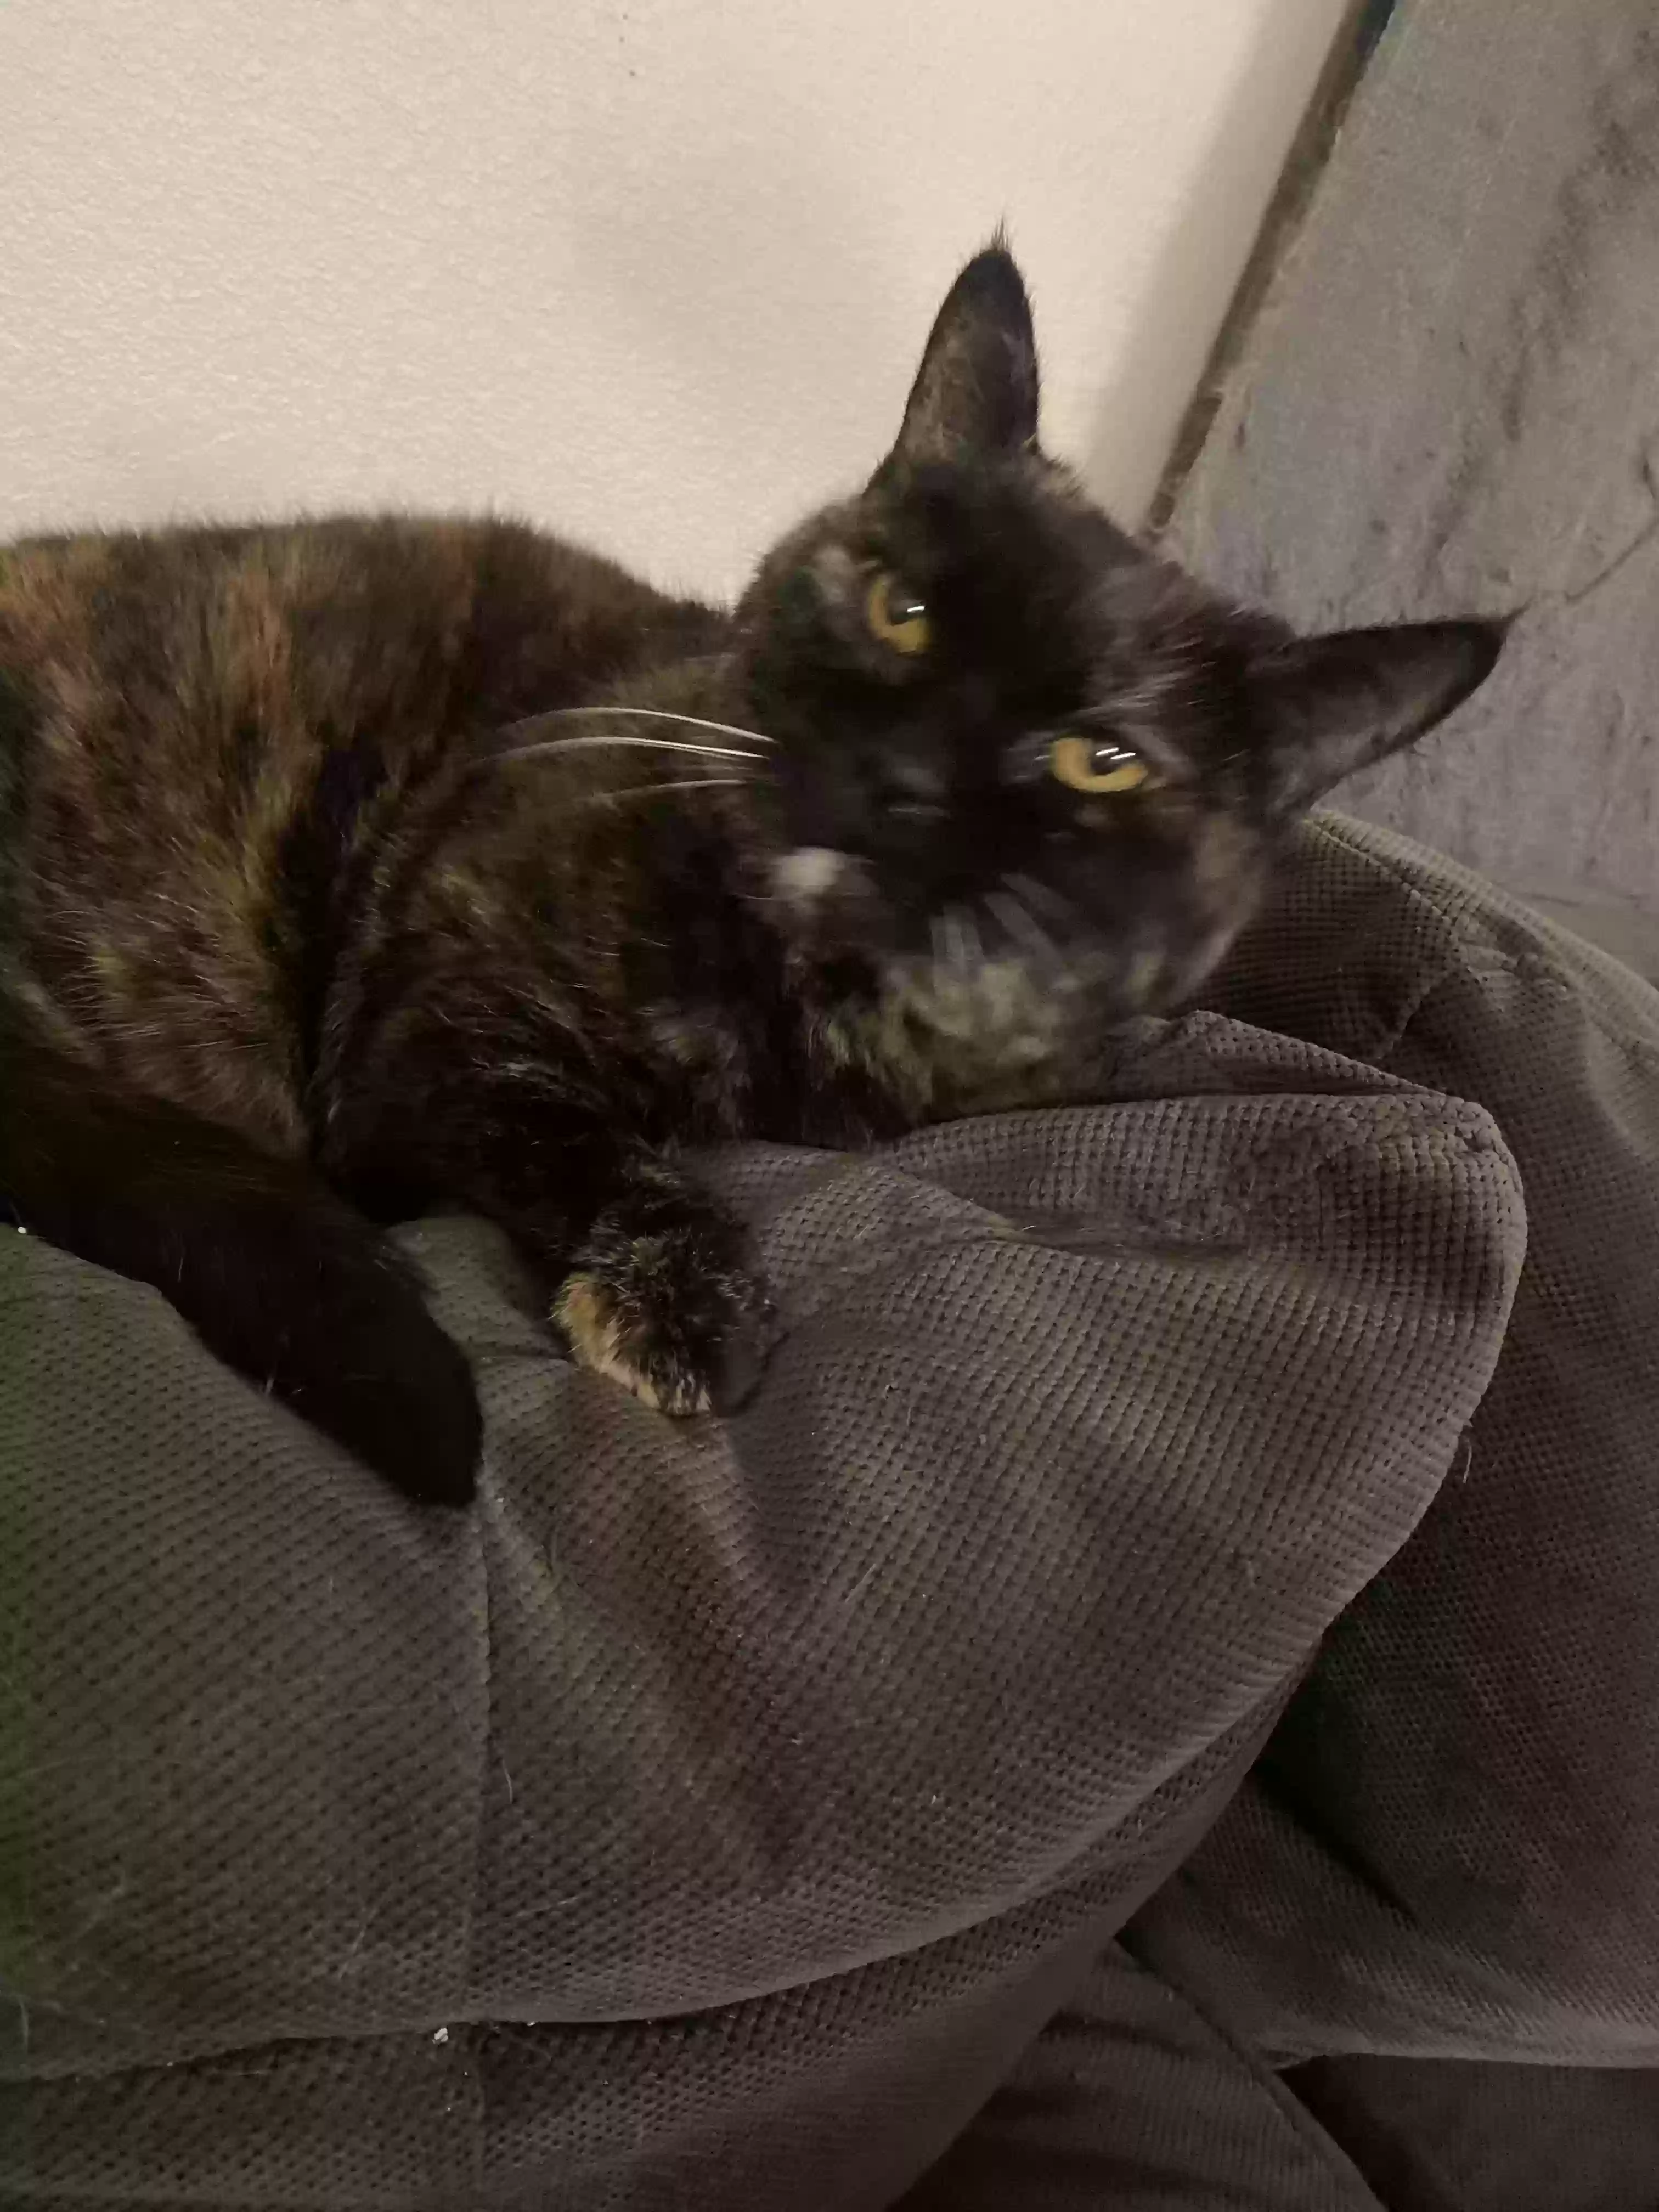 adoptable Cat in Albuquerque,NM named Lydia